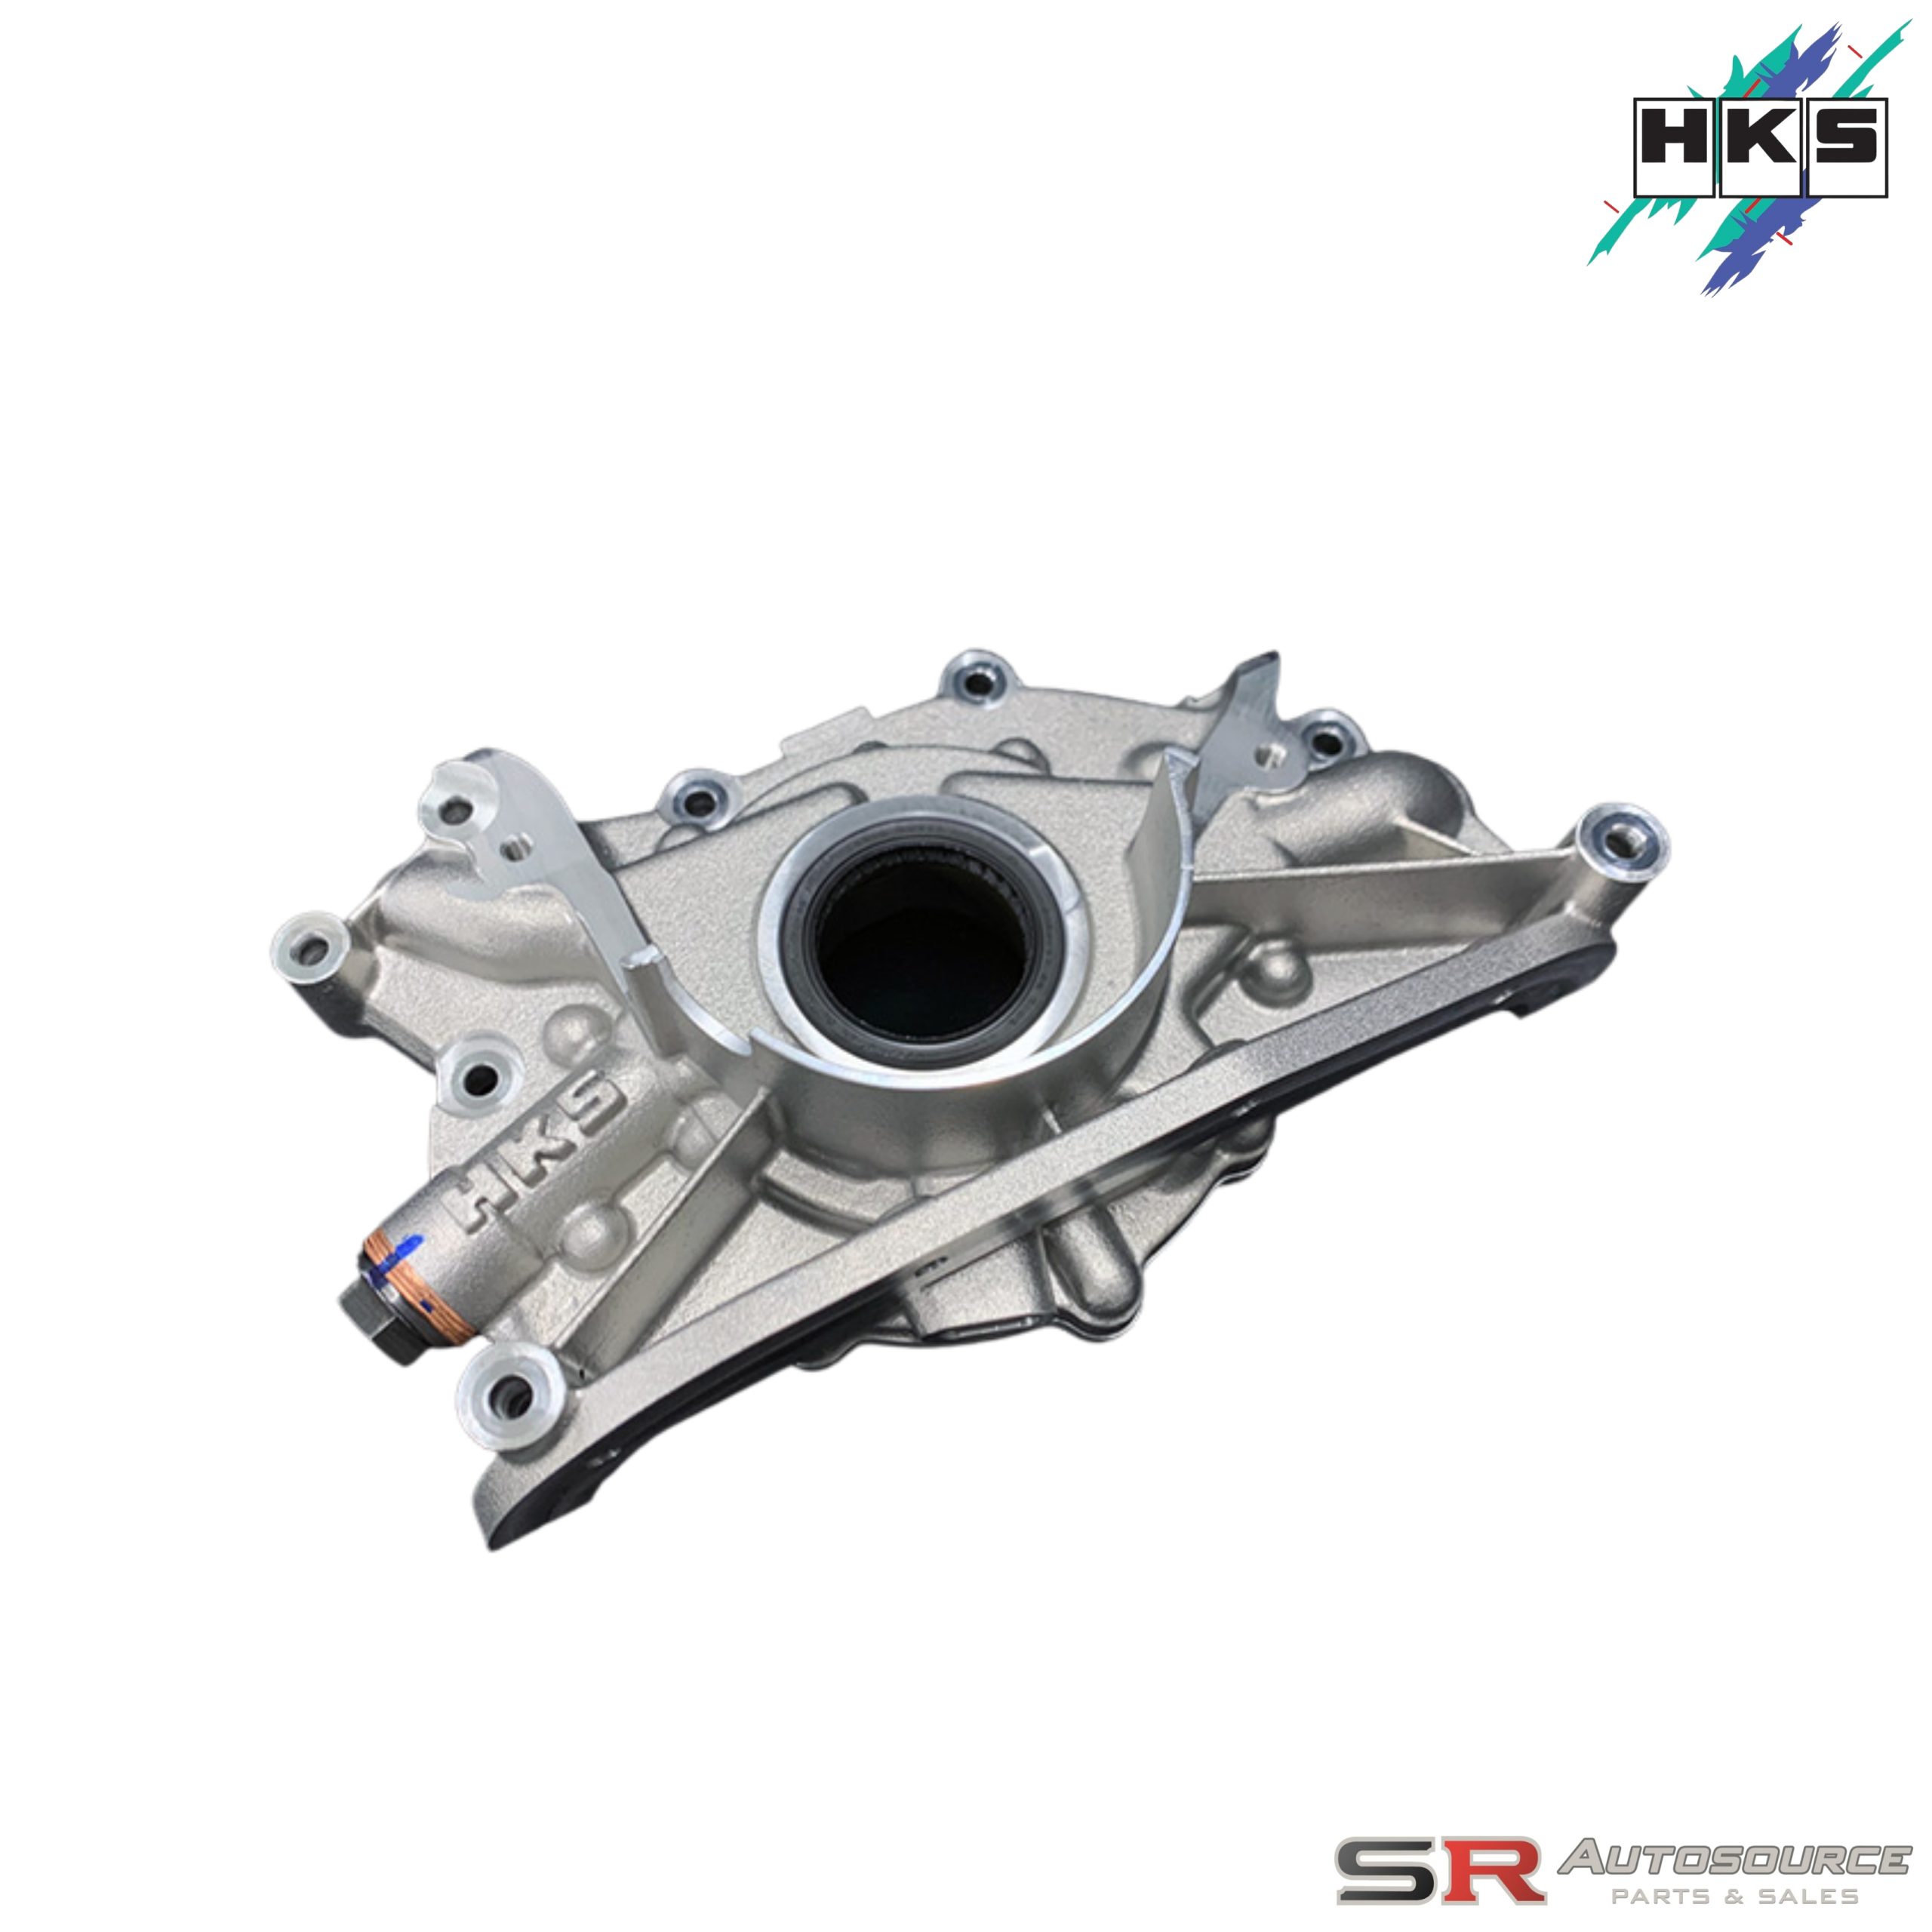 HKS Oil Pump Upgrade for RB26DETT